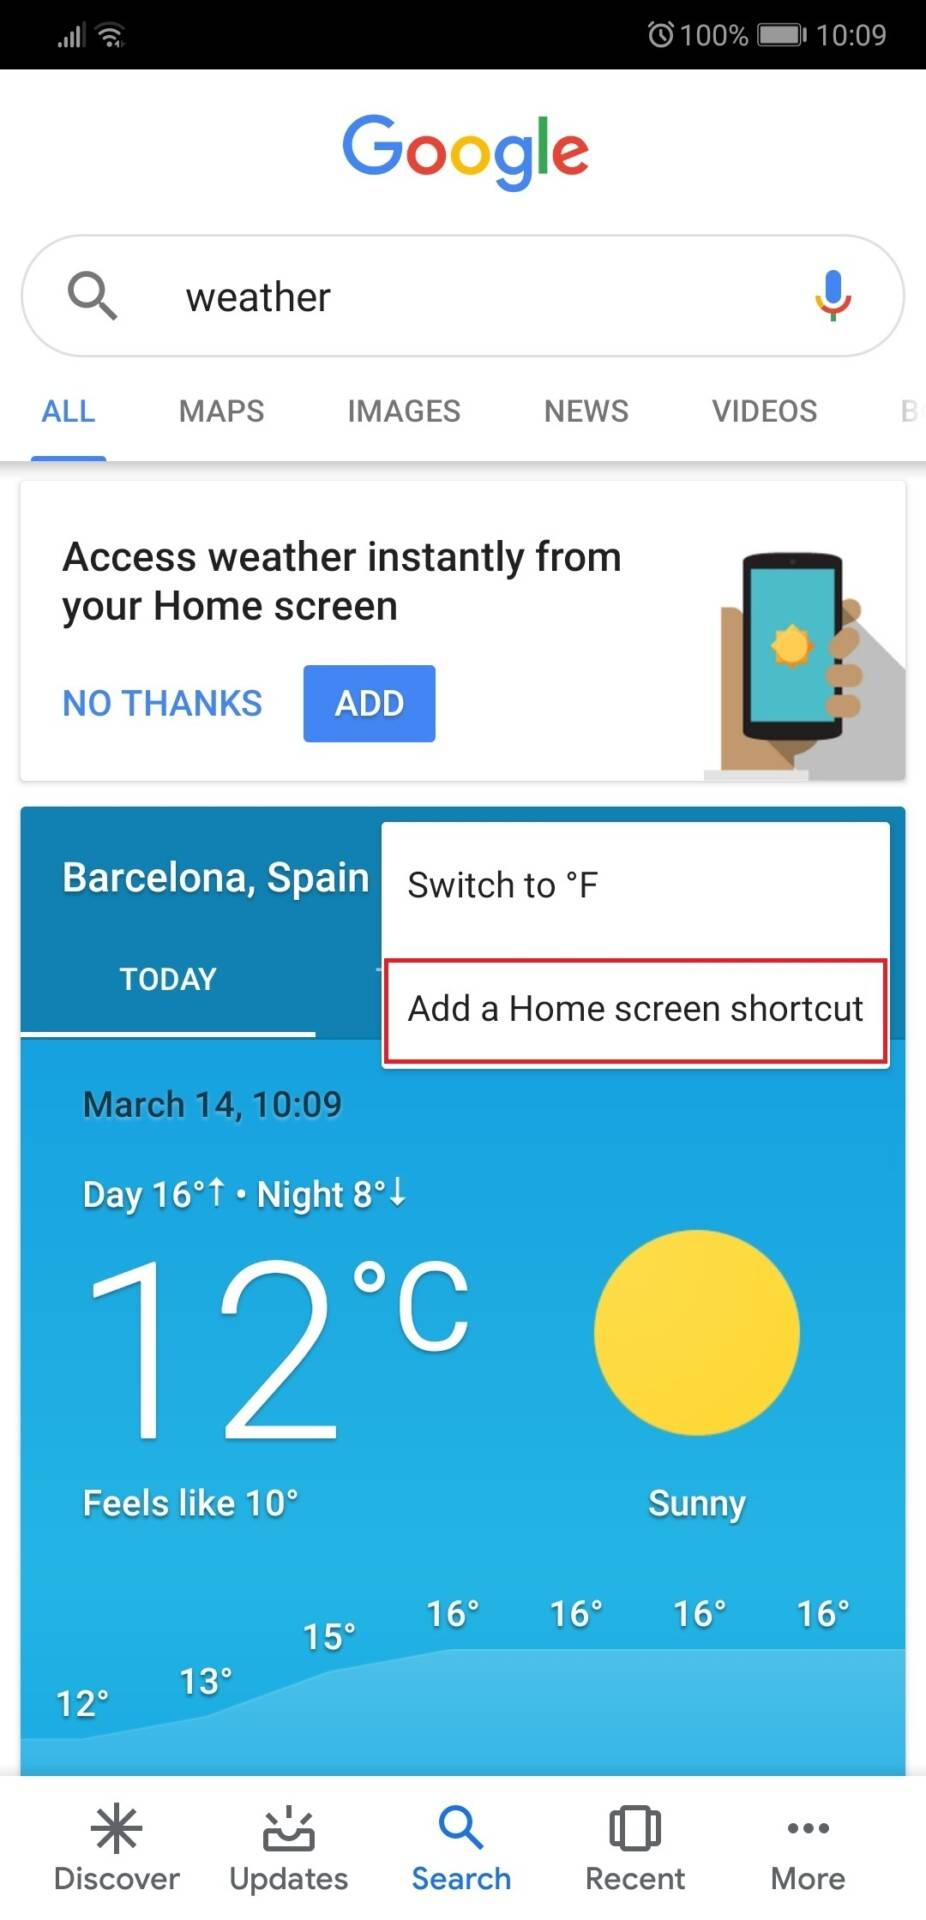 نصب برنامه Google weather در اندروید, برنامه آب و هوای گوگل, آب و هوای گوگل , برنامه Google Weather, Google Weather, روشتک,raveshtech, آموزش اندروید, ترفند های گوشی, ترفند های اندروید, ترفندهای موبایل, اندروید, وضعیت آب و هوا, android